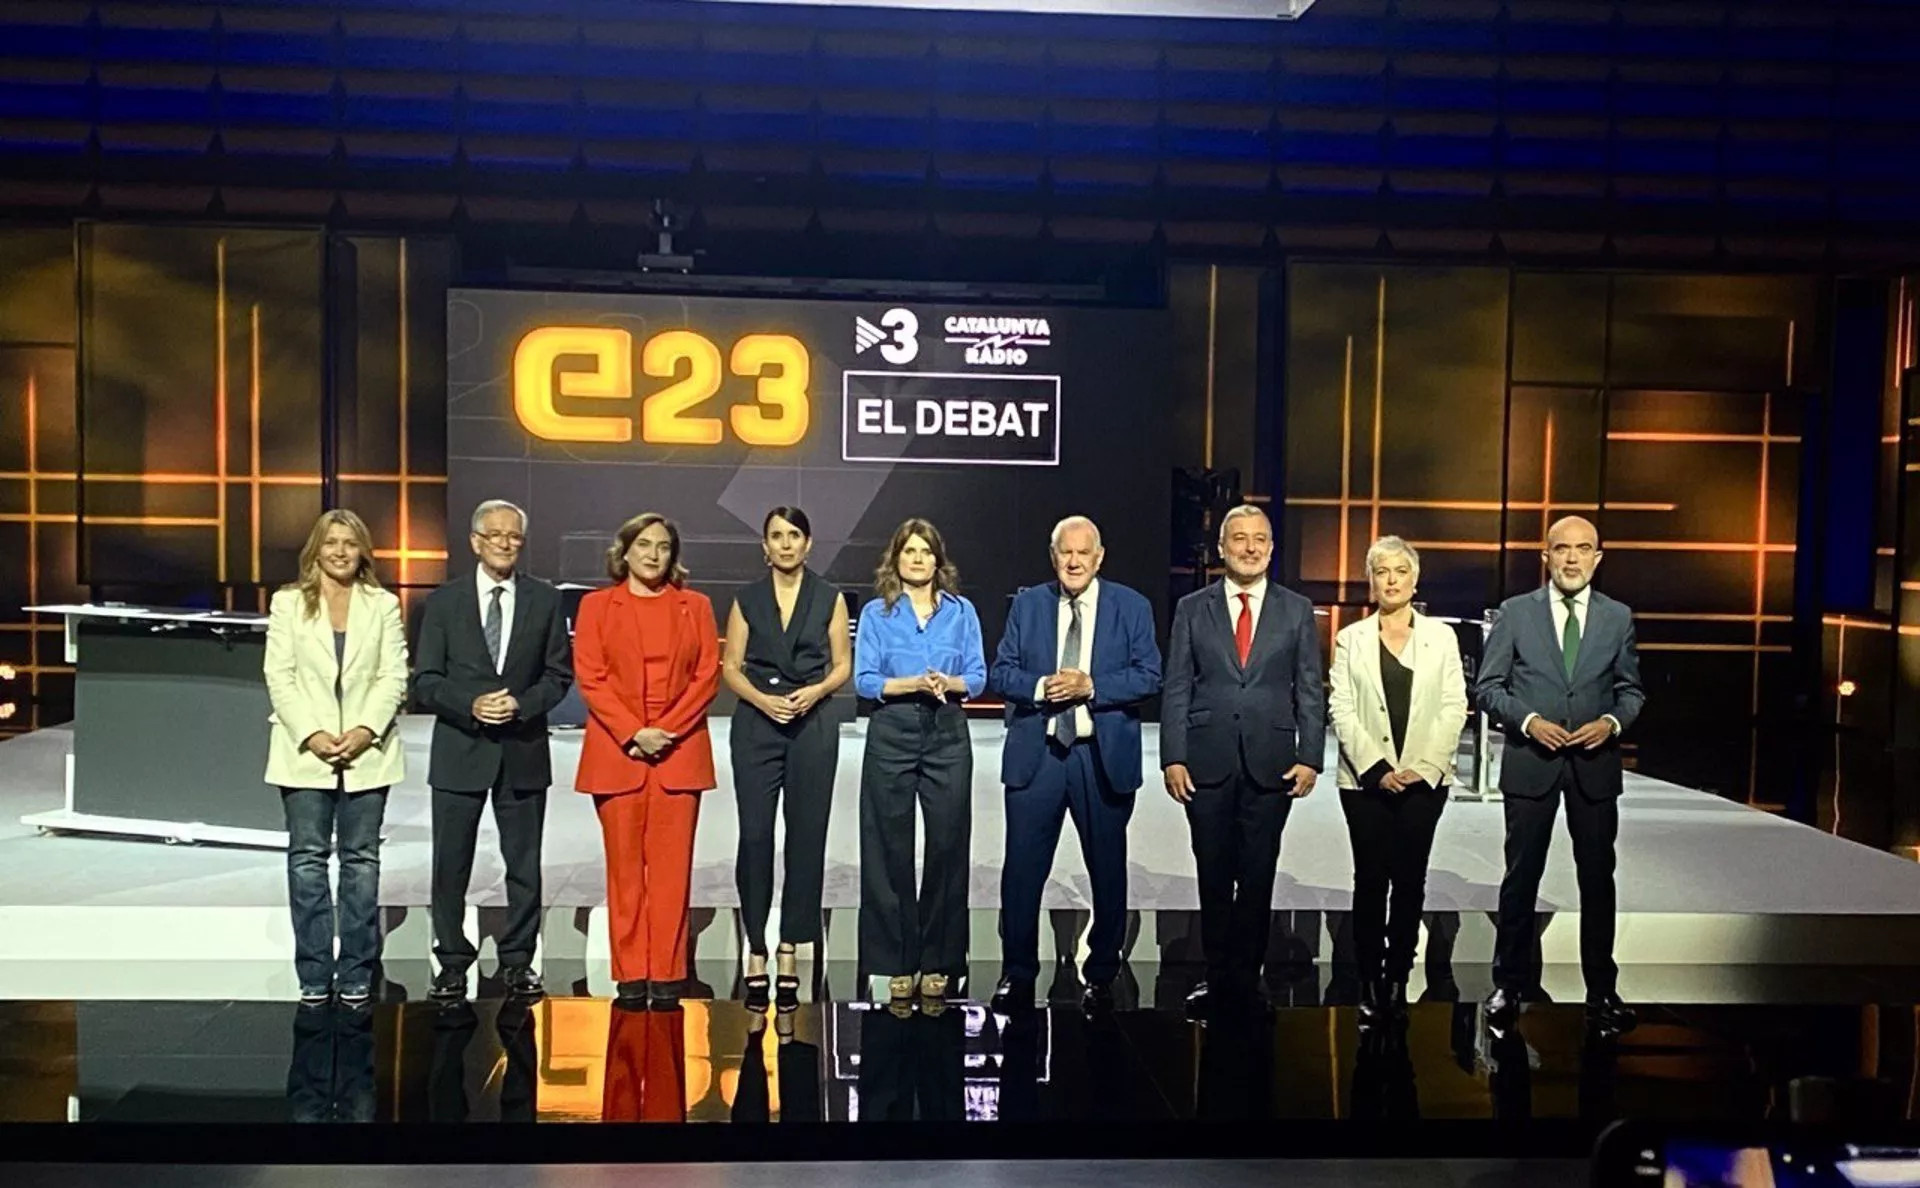 Los candidatos a la alcaldía de Barcelona en el debate de TV3 / EP